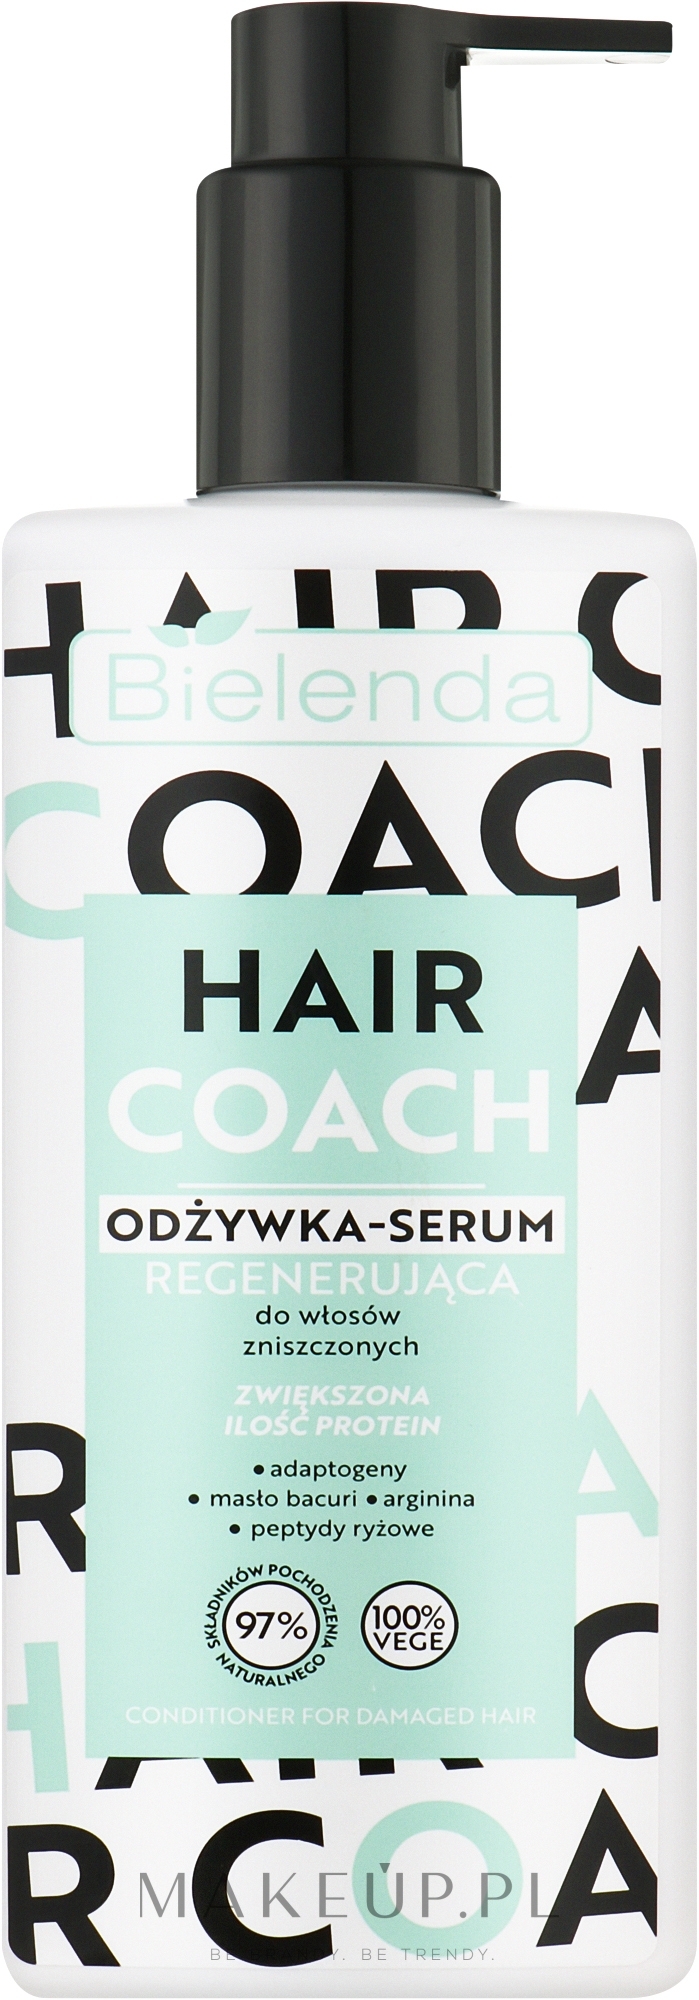 Odżywka-serum regenerująca do włosów zniszczonych - Bielenda Hair Coach — Zdjęcie 280 ml